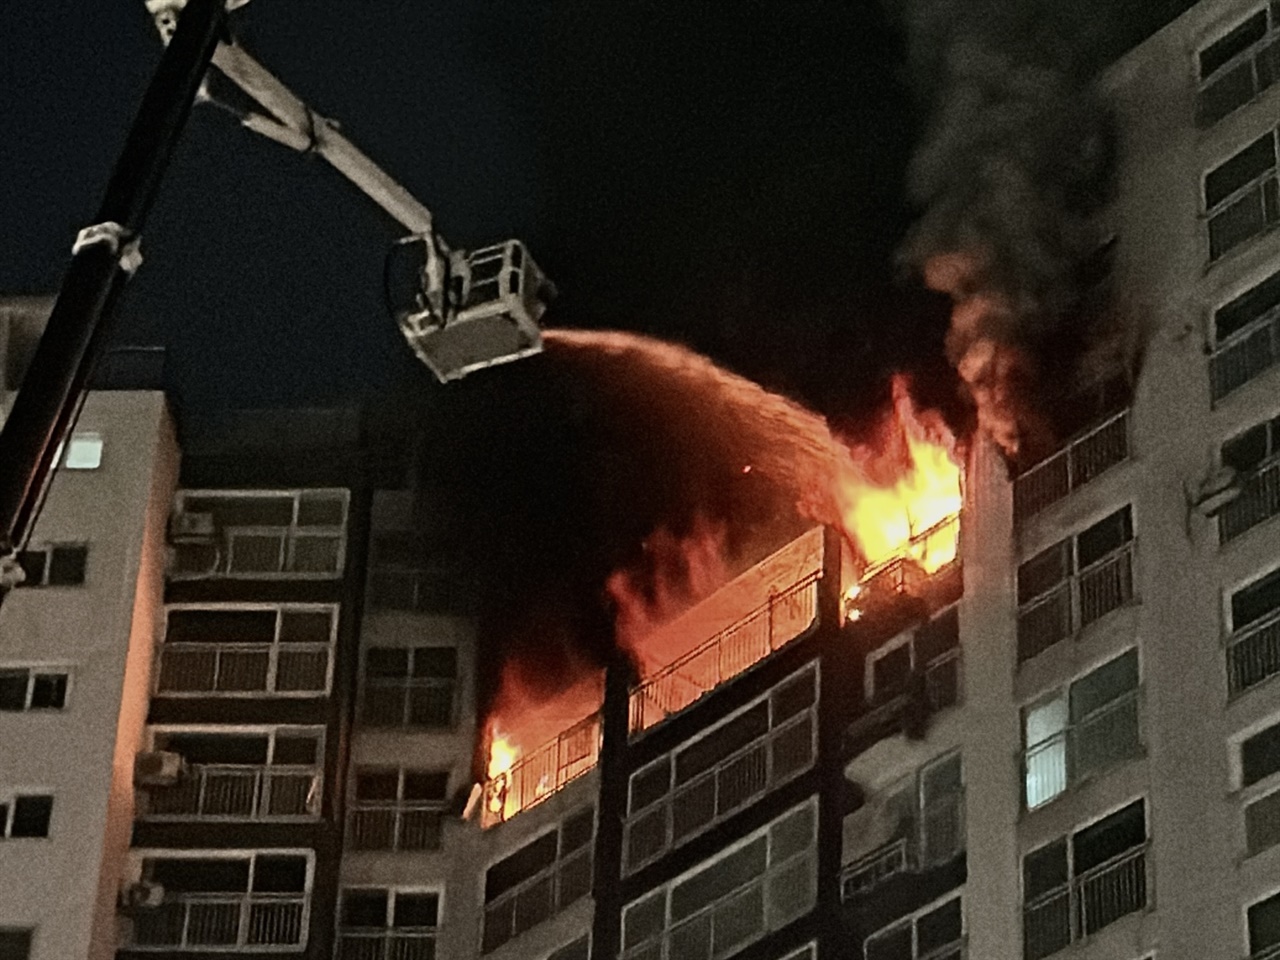 4일 오후 6시50분경 충남 홍성의 한 고층 아파트 13층에서 화재가 발생해 사다리차를 이용해 진화에 나서고 있다. 